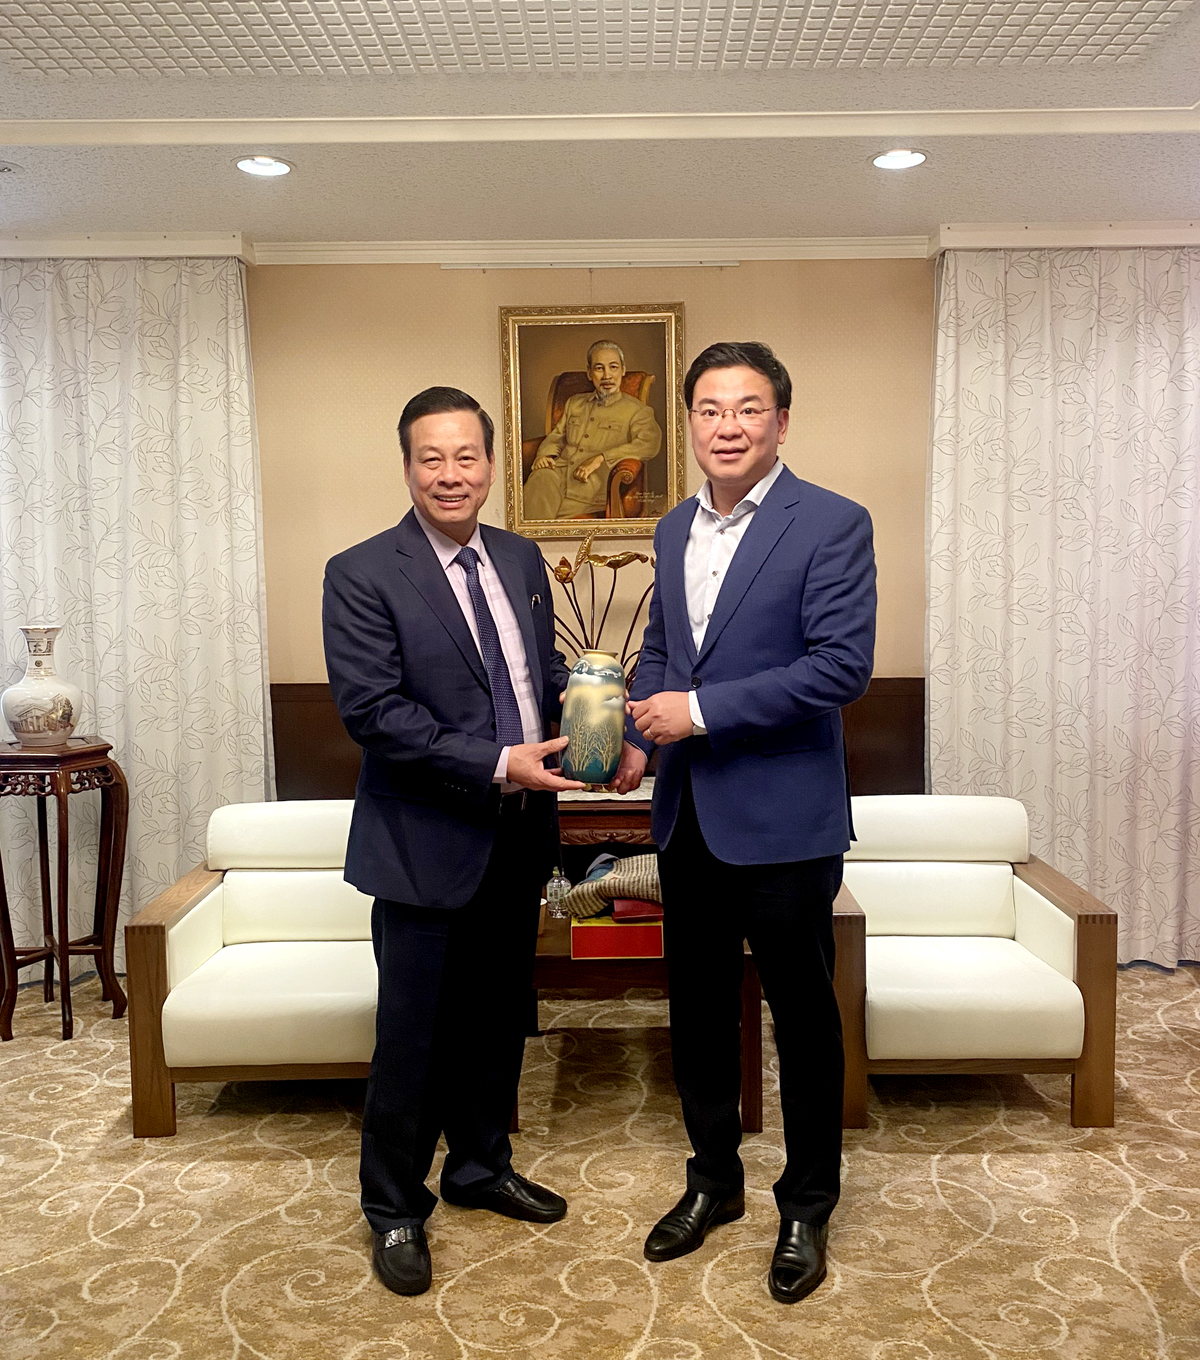 Đồng chí Phạm Quang Hiệu - Đại sứ đặc mệnh toàn quyền Việt Nam tại Nhật Bản tặng quà Chủ tịch UBND tỉnh Nguyễn Văn Sơn.